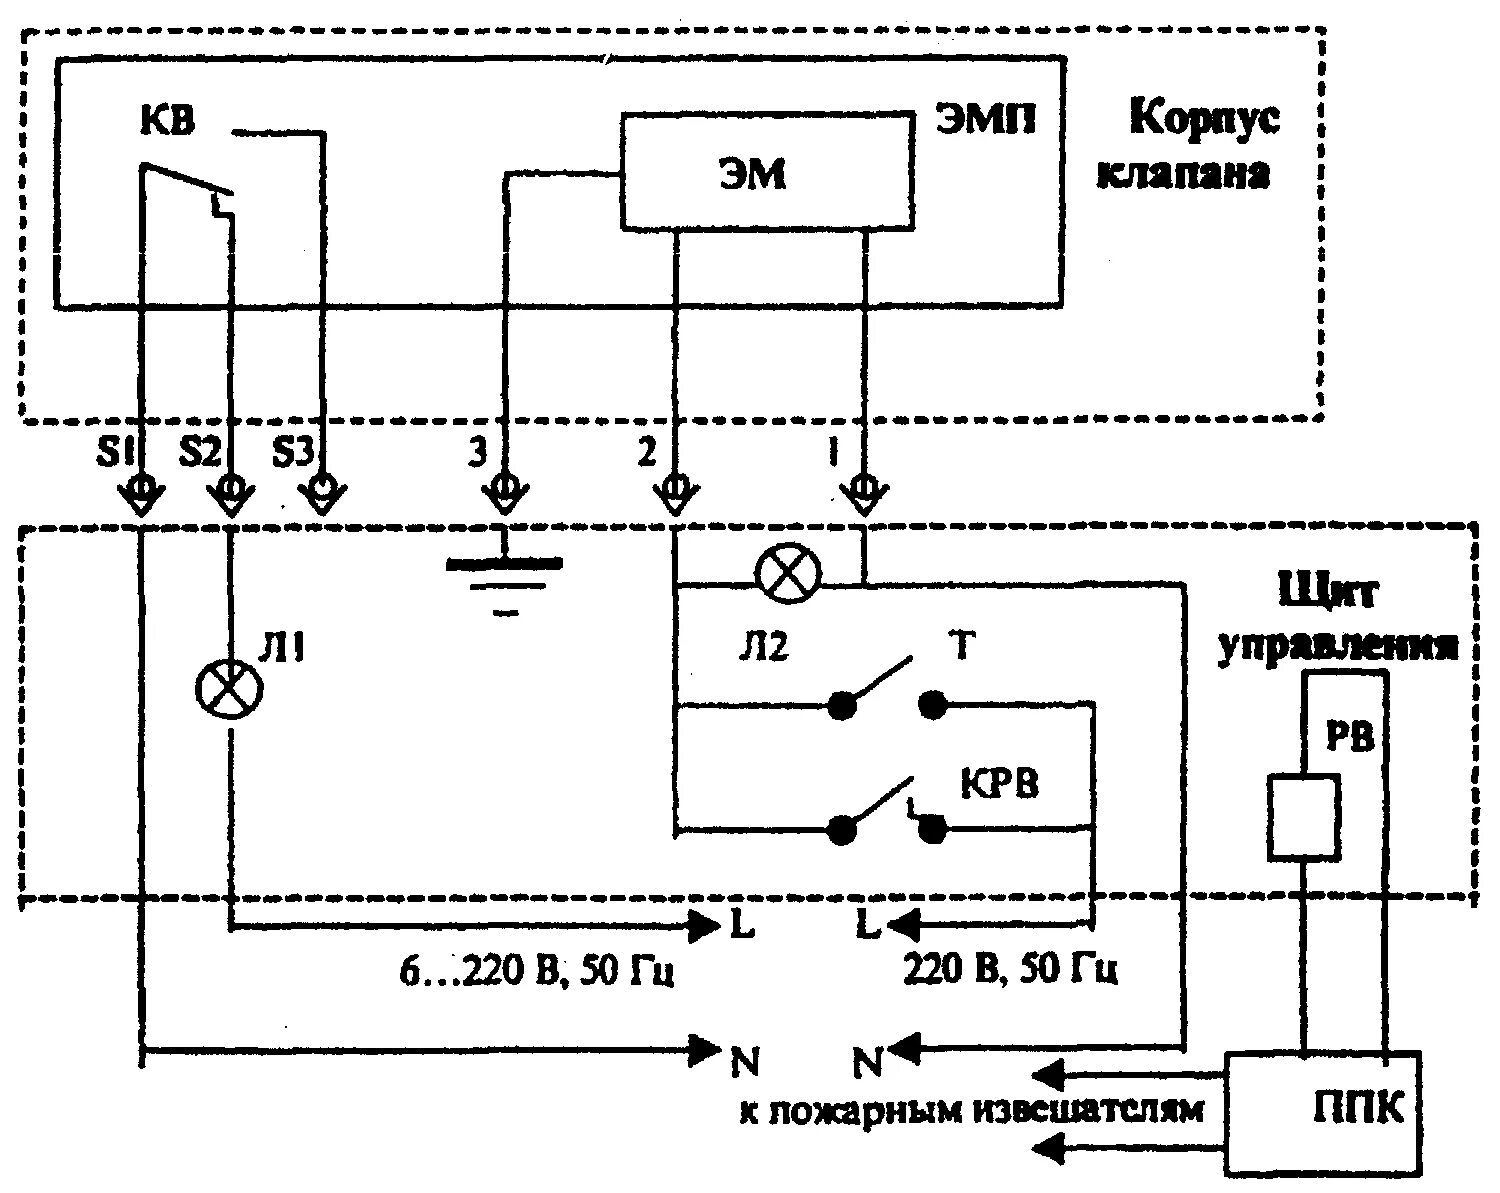 Клапан дымоудаления КДМ-2 схема подключения. ЭМП-к1 электромагнитный схема подключения. ЭМП-к1 электромагнитный привод схема подключения. ЭМП-к1(220 в) электромагнитный привод.